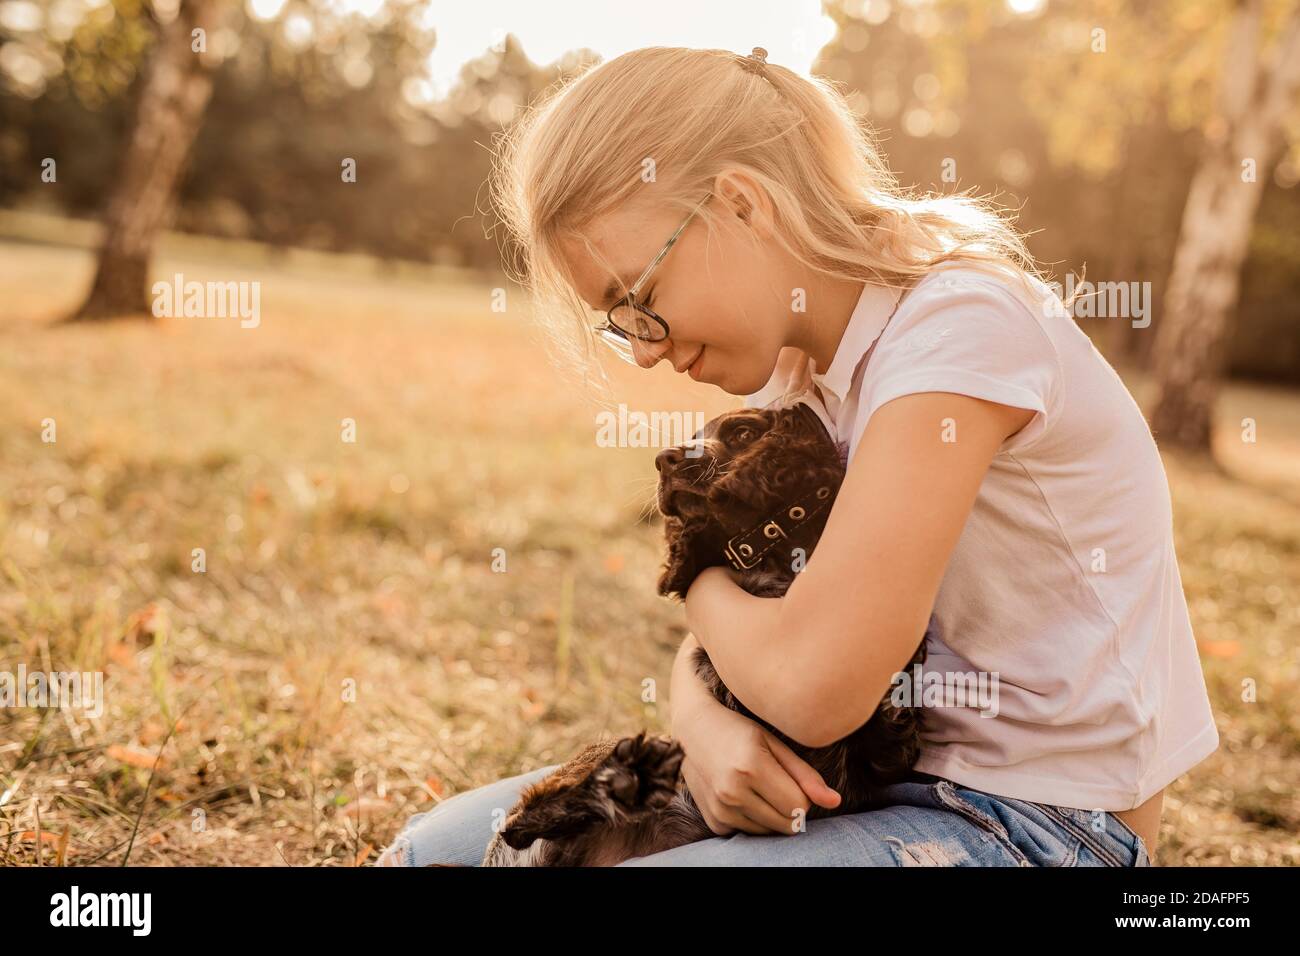 12 Jahre alt blonde Mädchen mit großen Brillen lachen und Spielen mit kleinen Welpen Spaniel im warmen Herbst Park Oder Wald Stockfoto